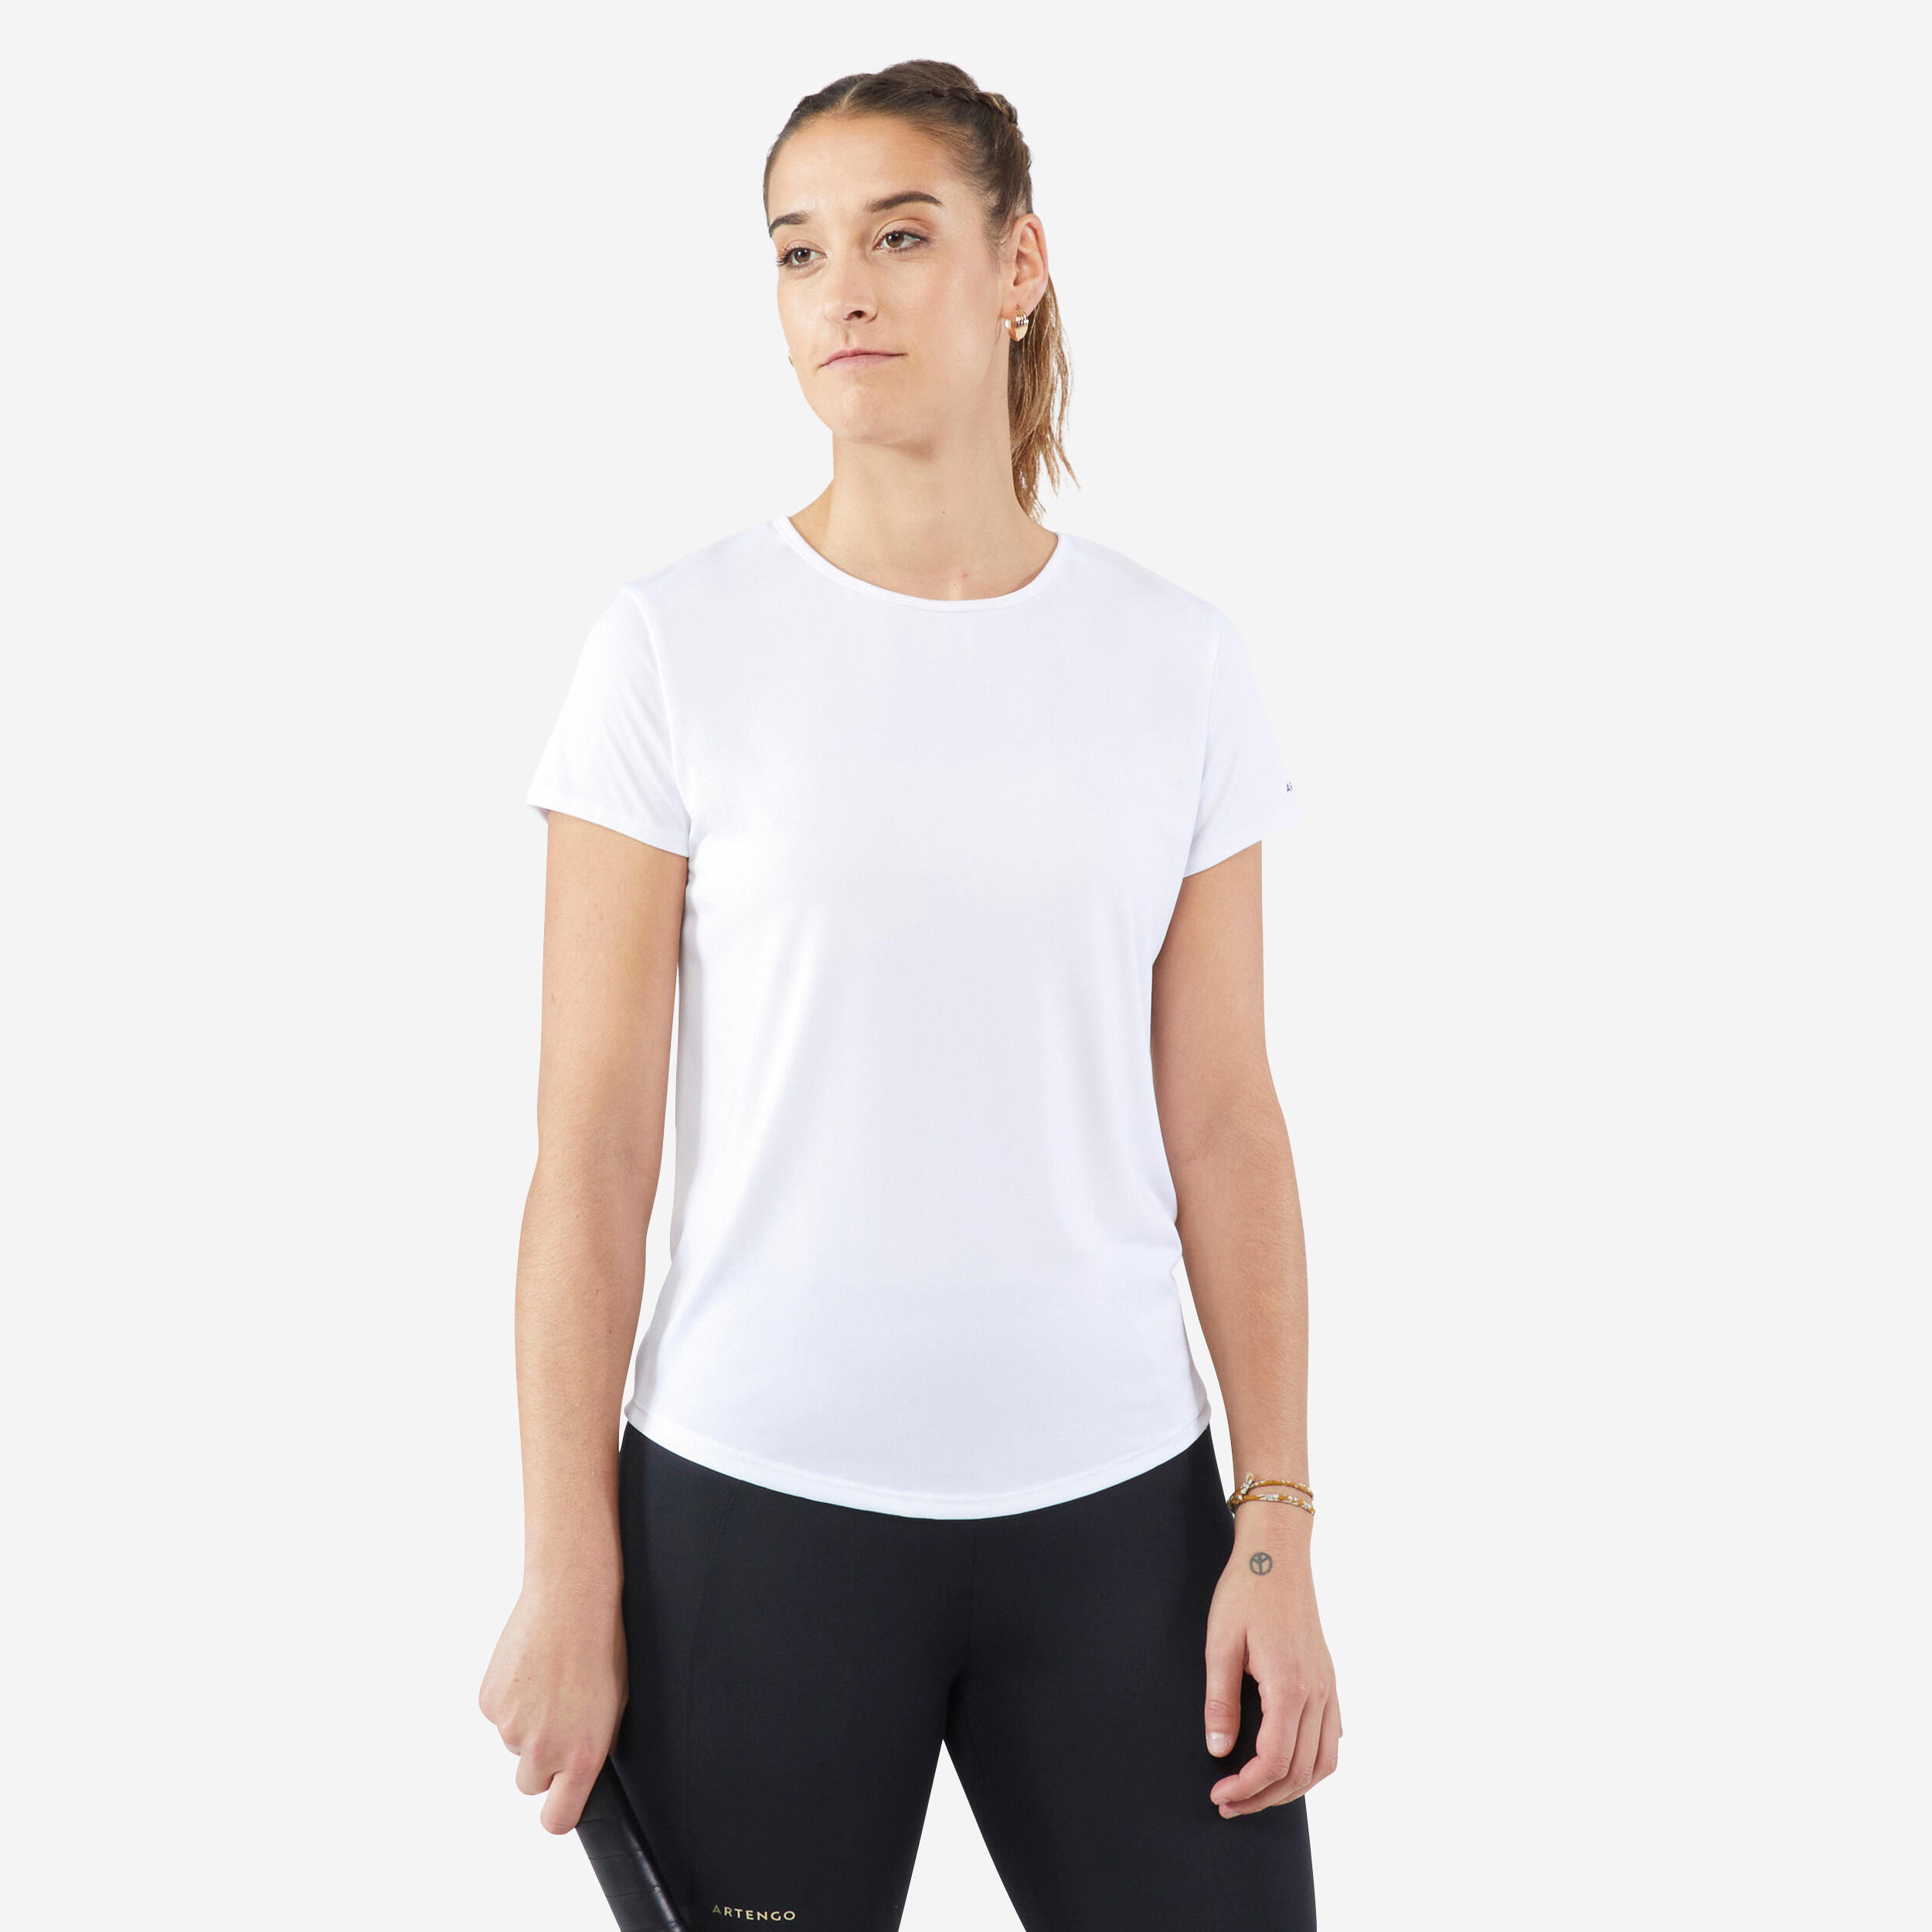 Decathlon | T-shirt tennis donna ESSENTIAL 100 bianca |  Artengo